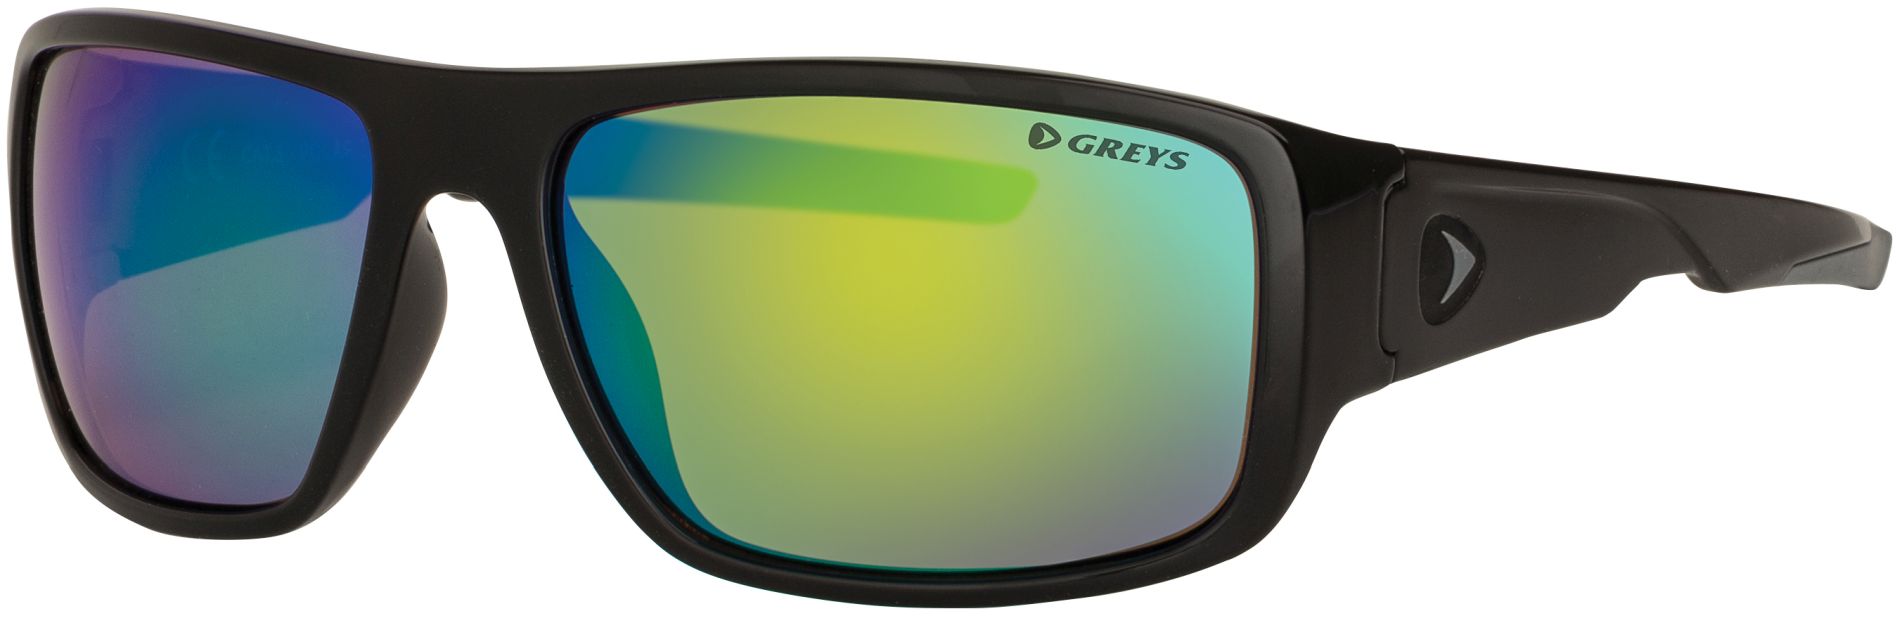 Sluneční brýle Greys G2 GLOSS BLACK/GREEN MIRROR